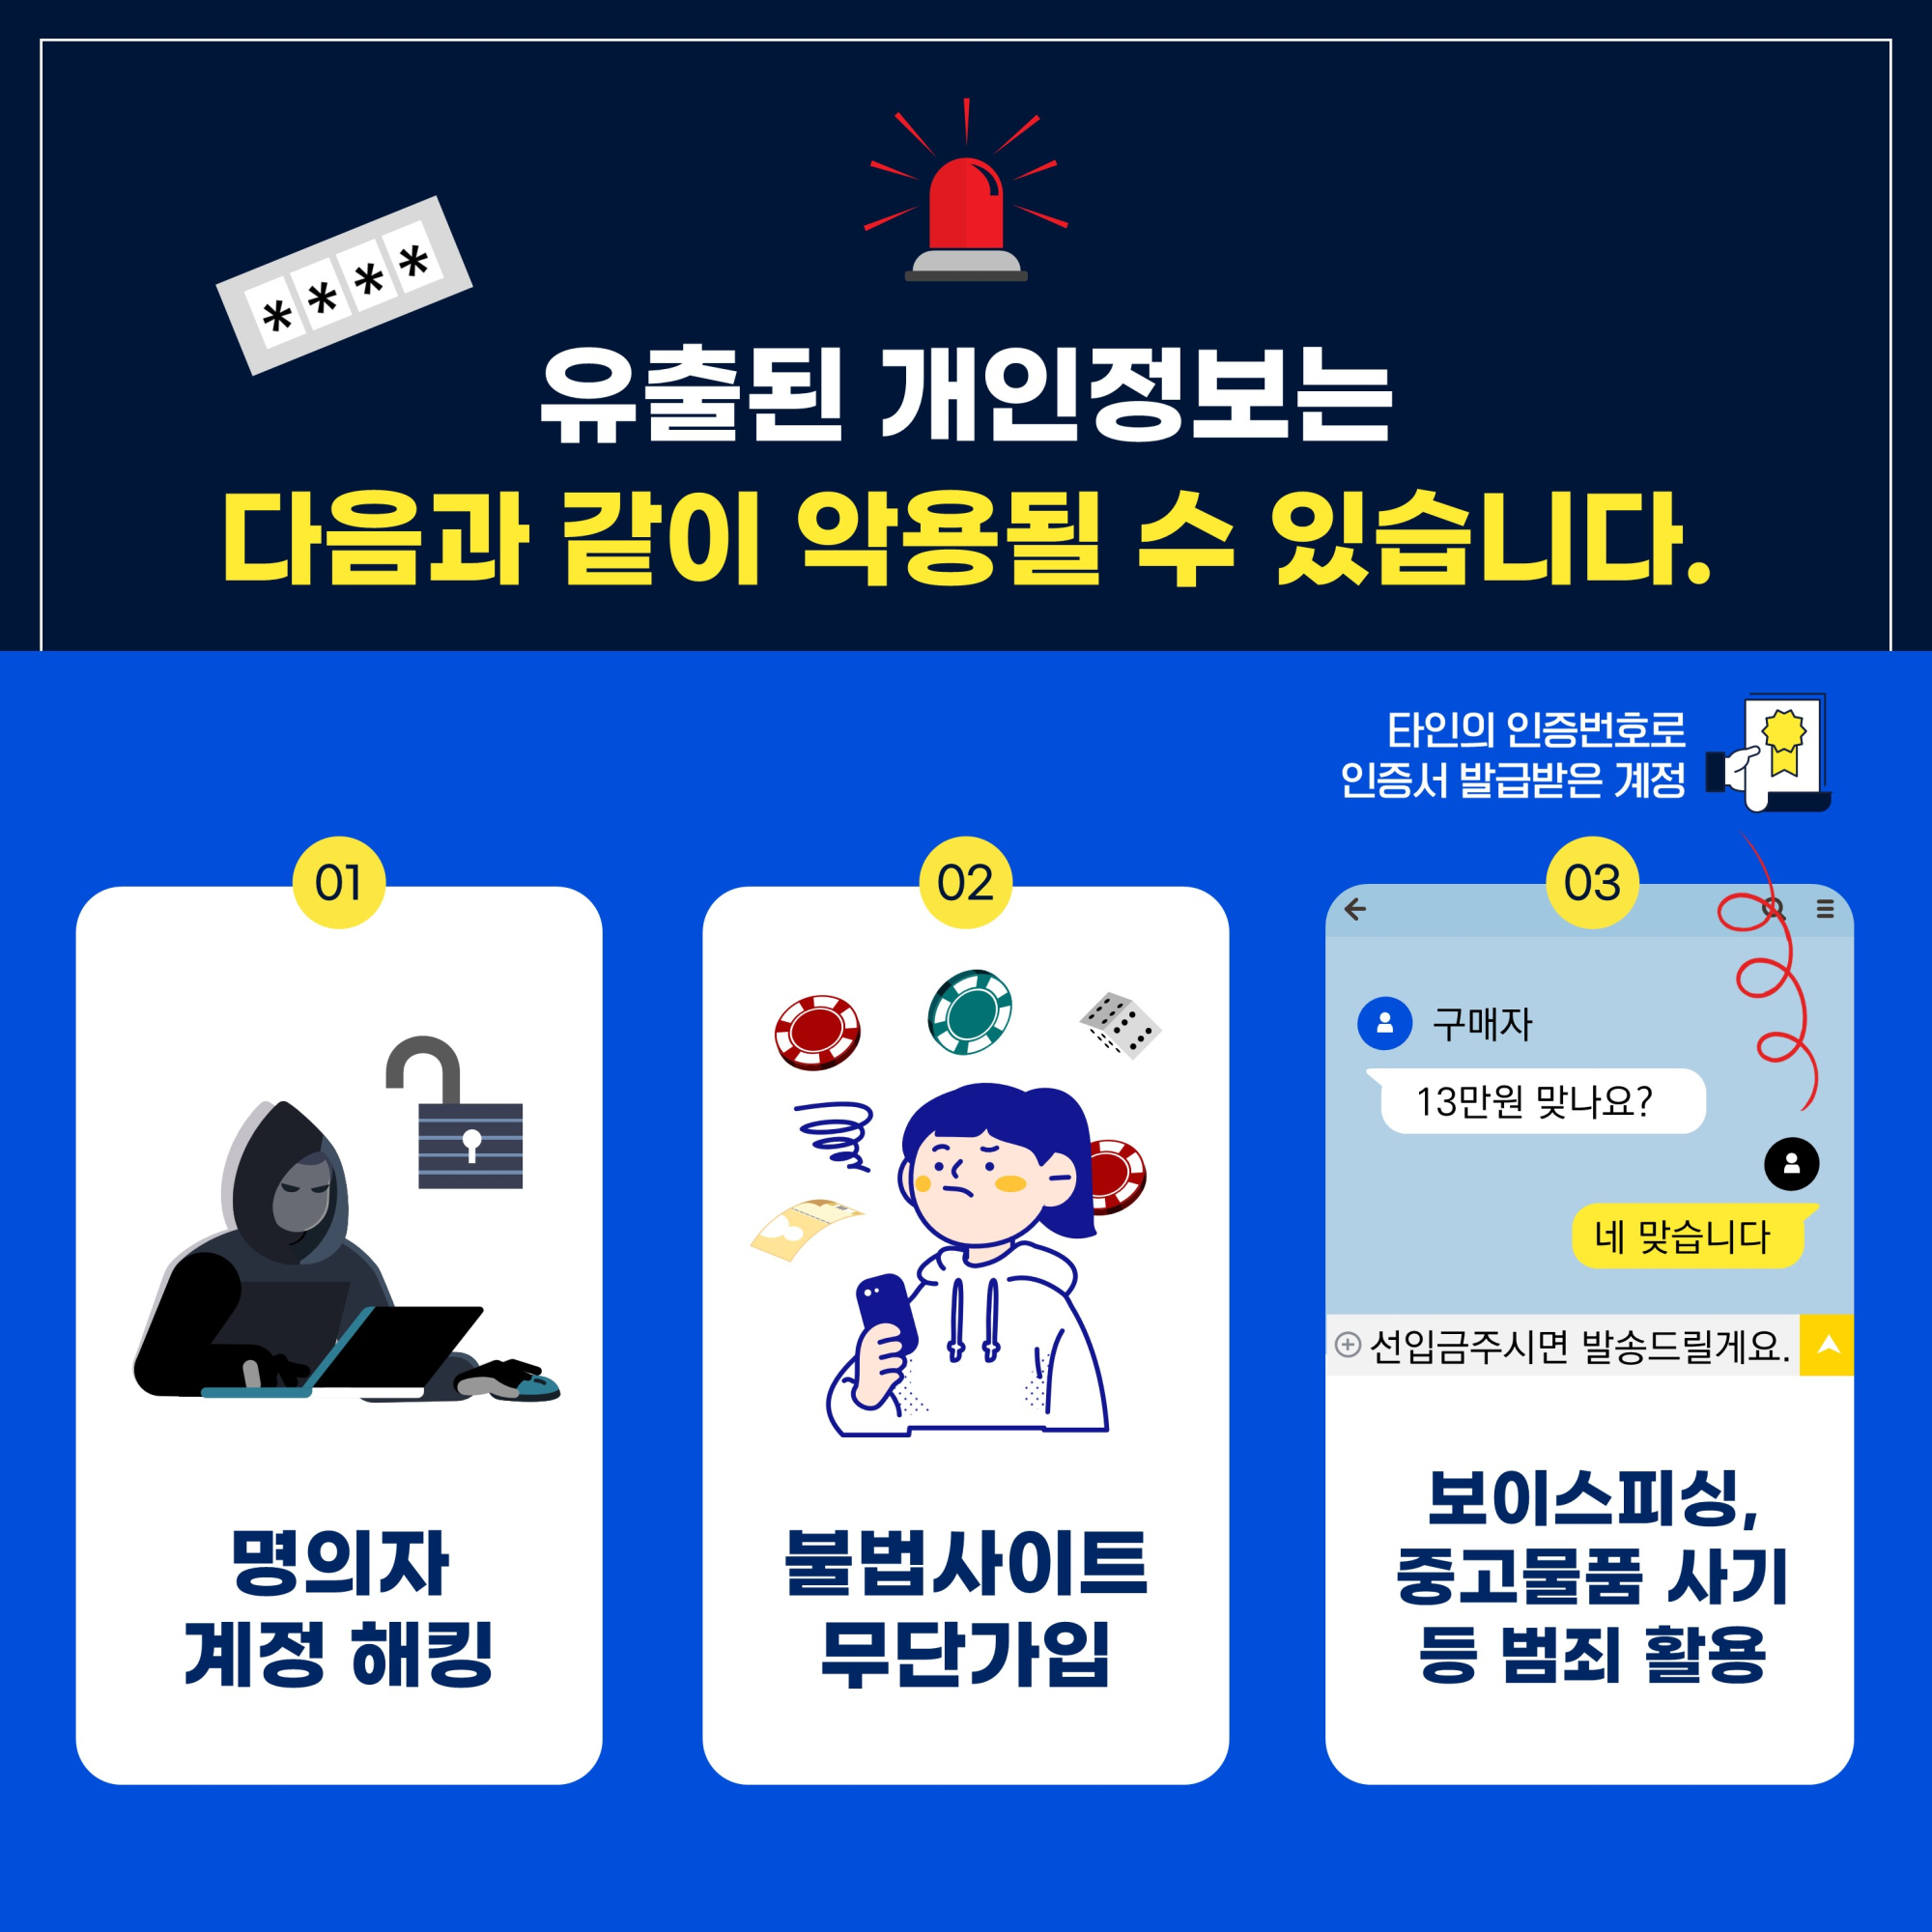 신종유형 발생경보 카드뉴스 수정 (3)